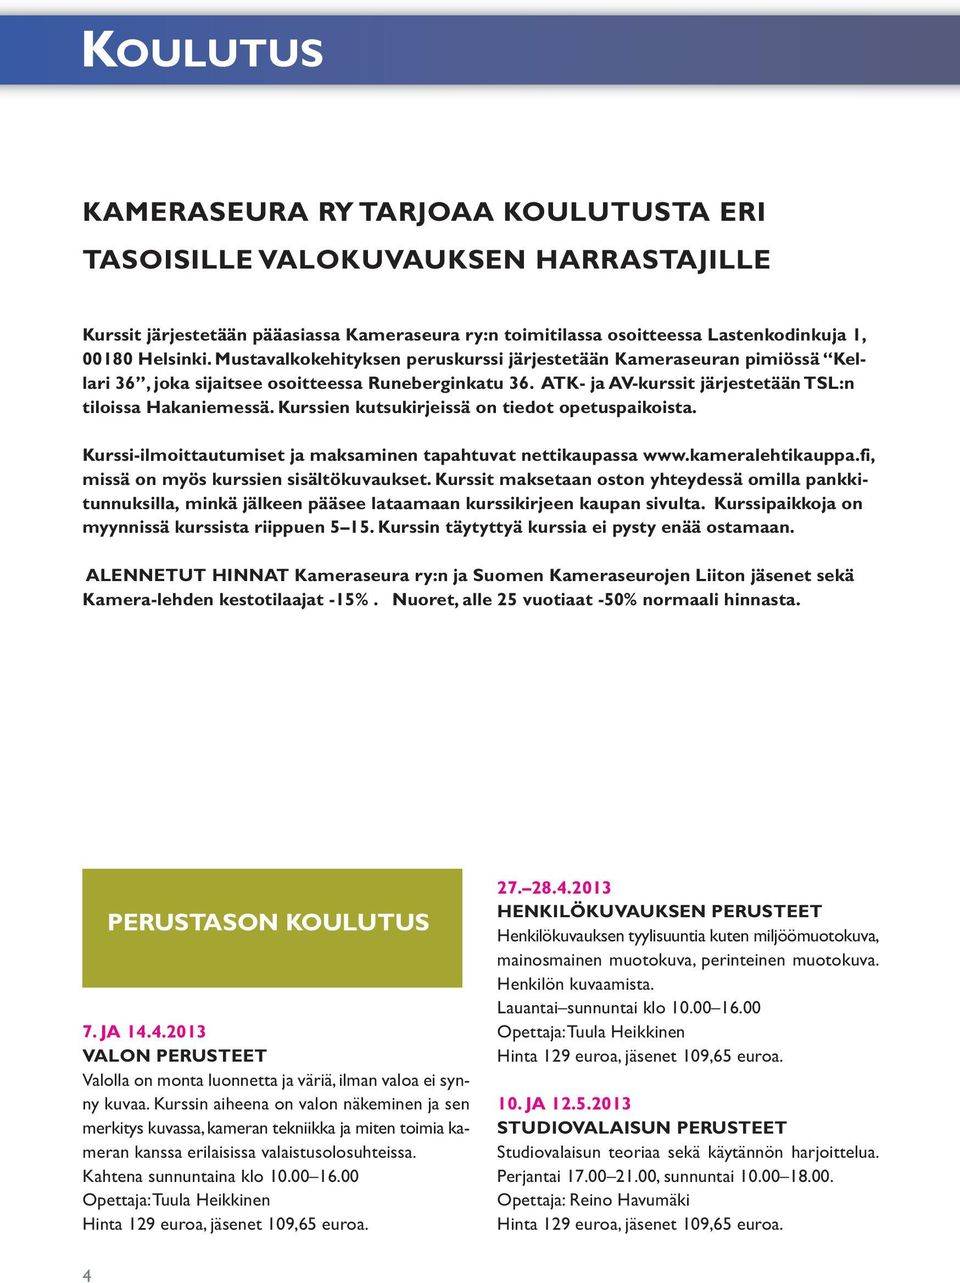 Kurssien kutsukirjeissä on tiedot opetuspaikoista. Kurssi-ilmoittautumiset ja maksaminen tapahtuvat nettikaupassa www.kameralehtikauppa.fi, missä on myös kurssien sisältökuvaukset.